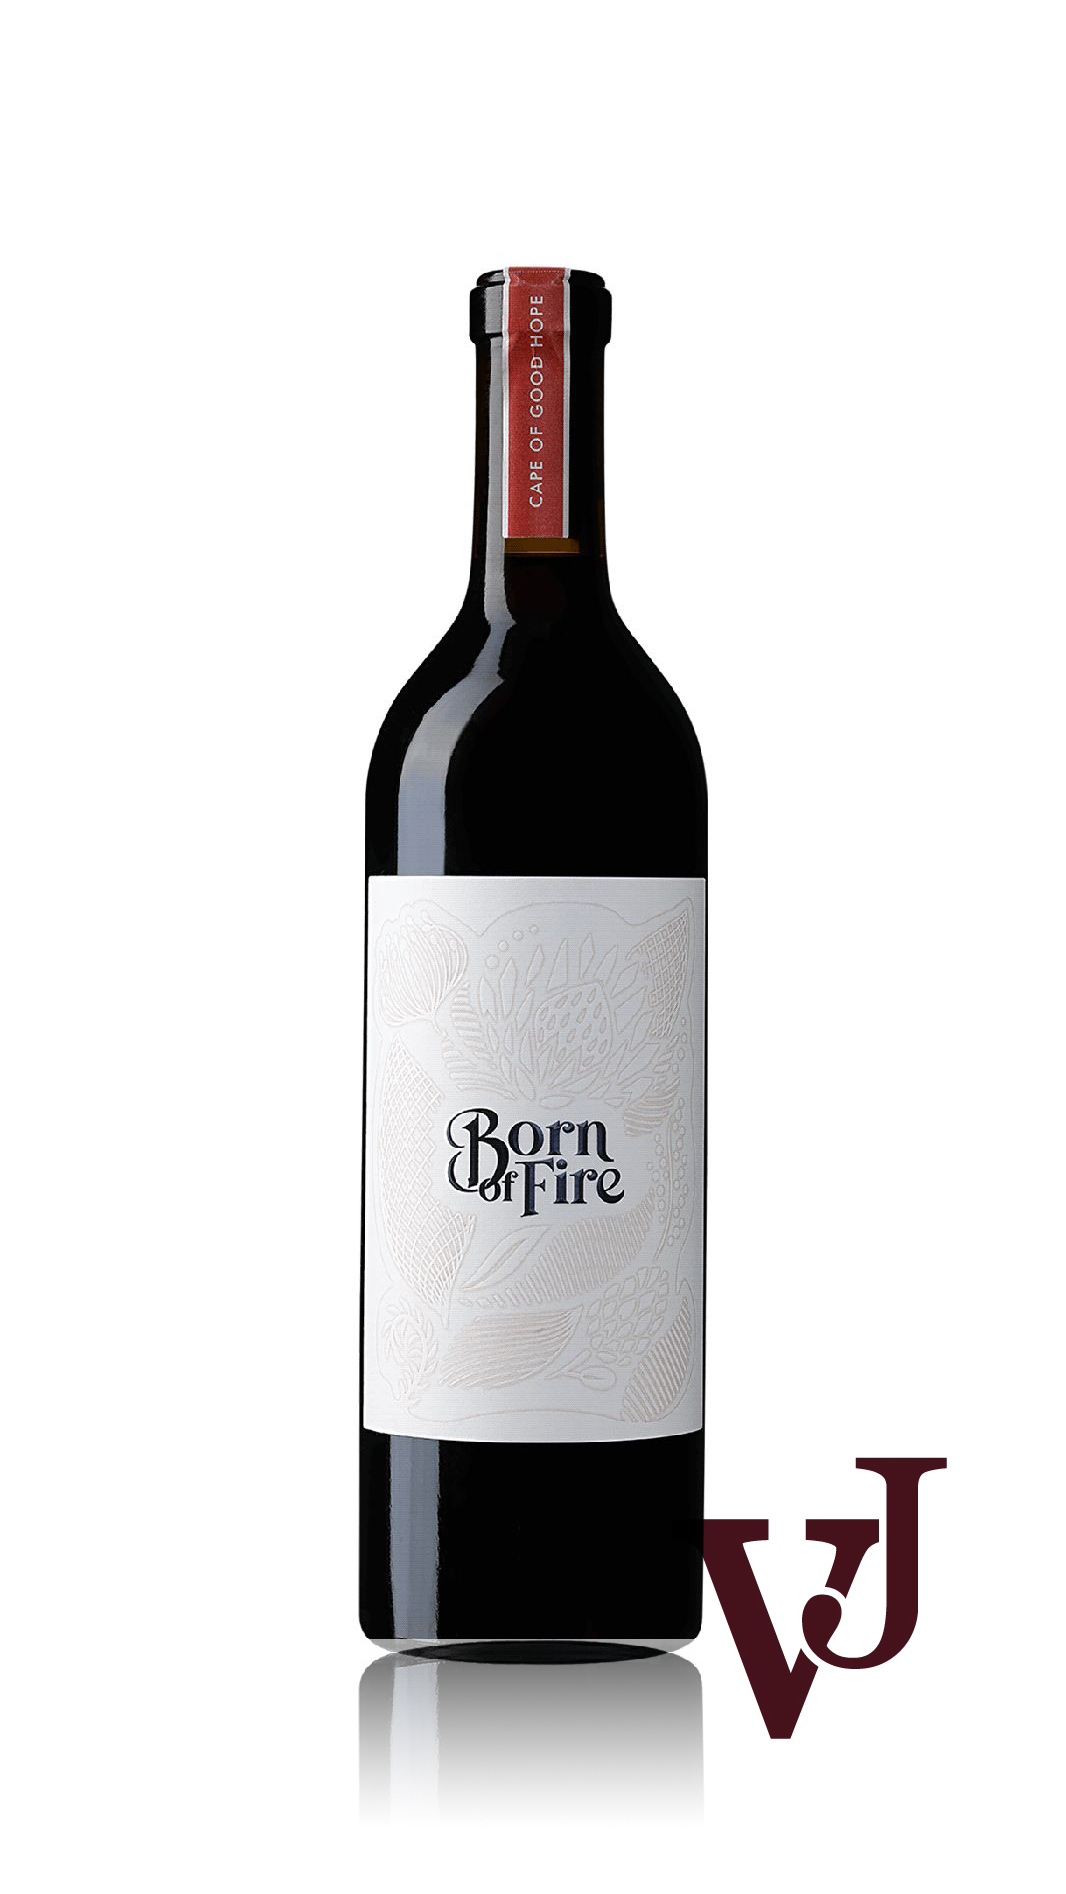 Rött Vin - Born of Fire Syrah 2021 artikel nummer 5968101 från producenten JS WINES C.C. från området Sydafrika